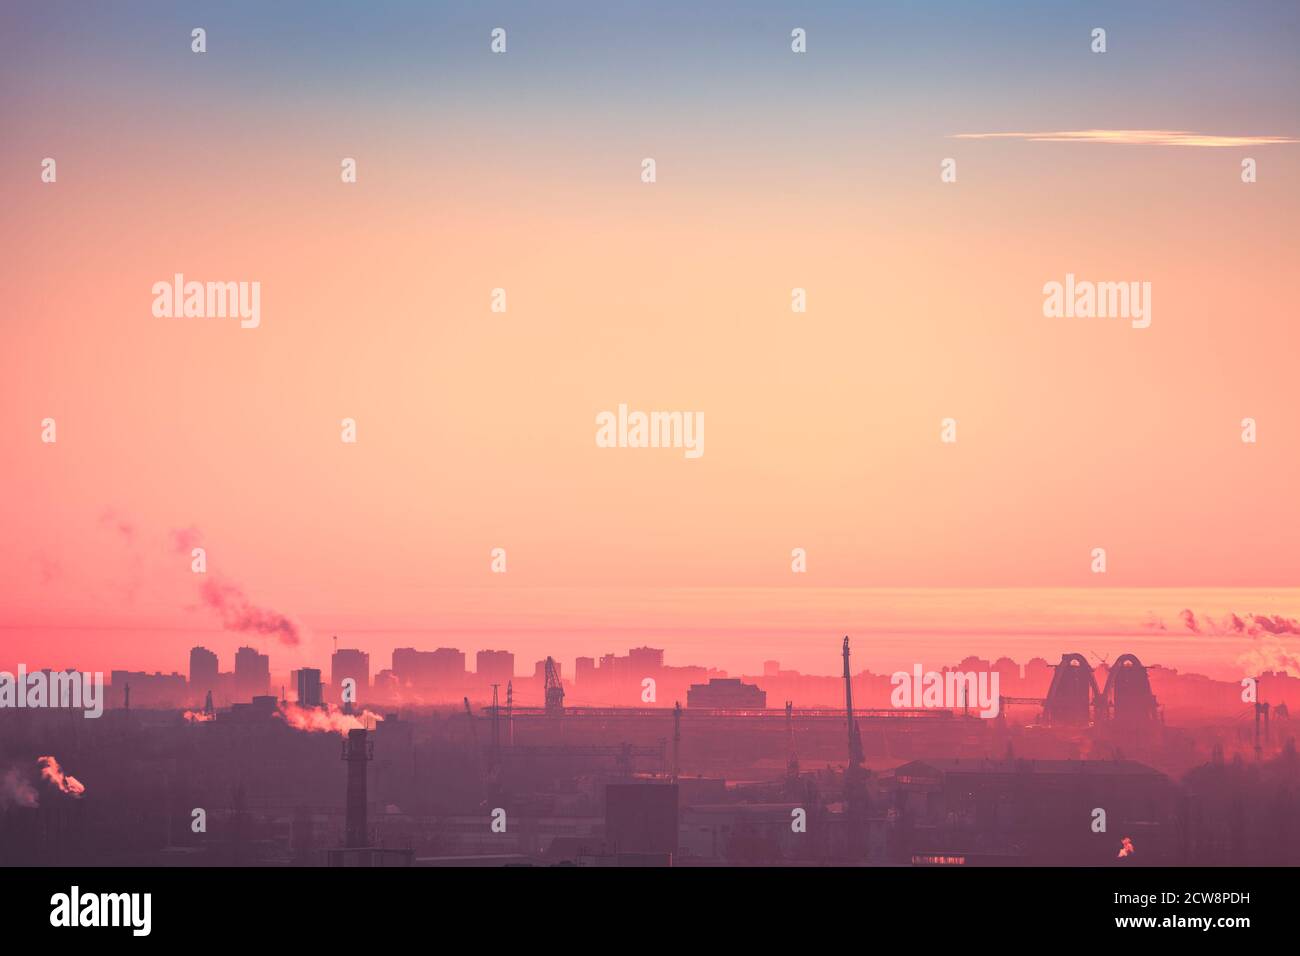 Paysage urbain silhouette de Kiev illustration: Ciel de lever de soleil rose avec nuage solitaire. Brume sur des bâtiments, des tours, des maisons dans le paysage urbain industriel. Paysage urbain dans un motif doux et chaud. Paysage de ville européenne Banque D'Images